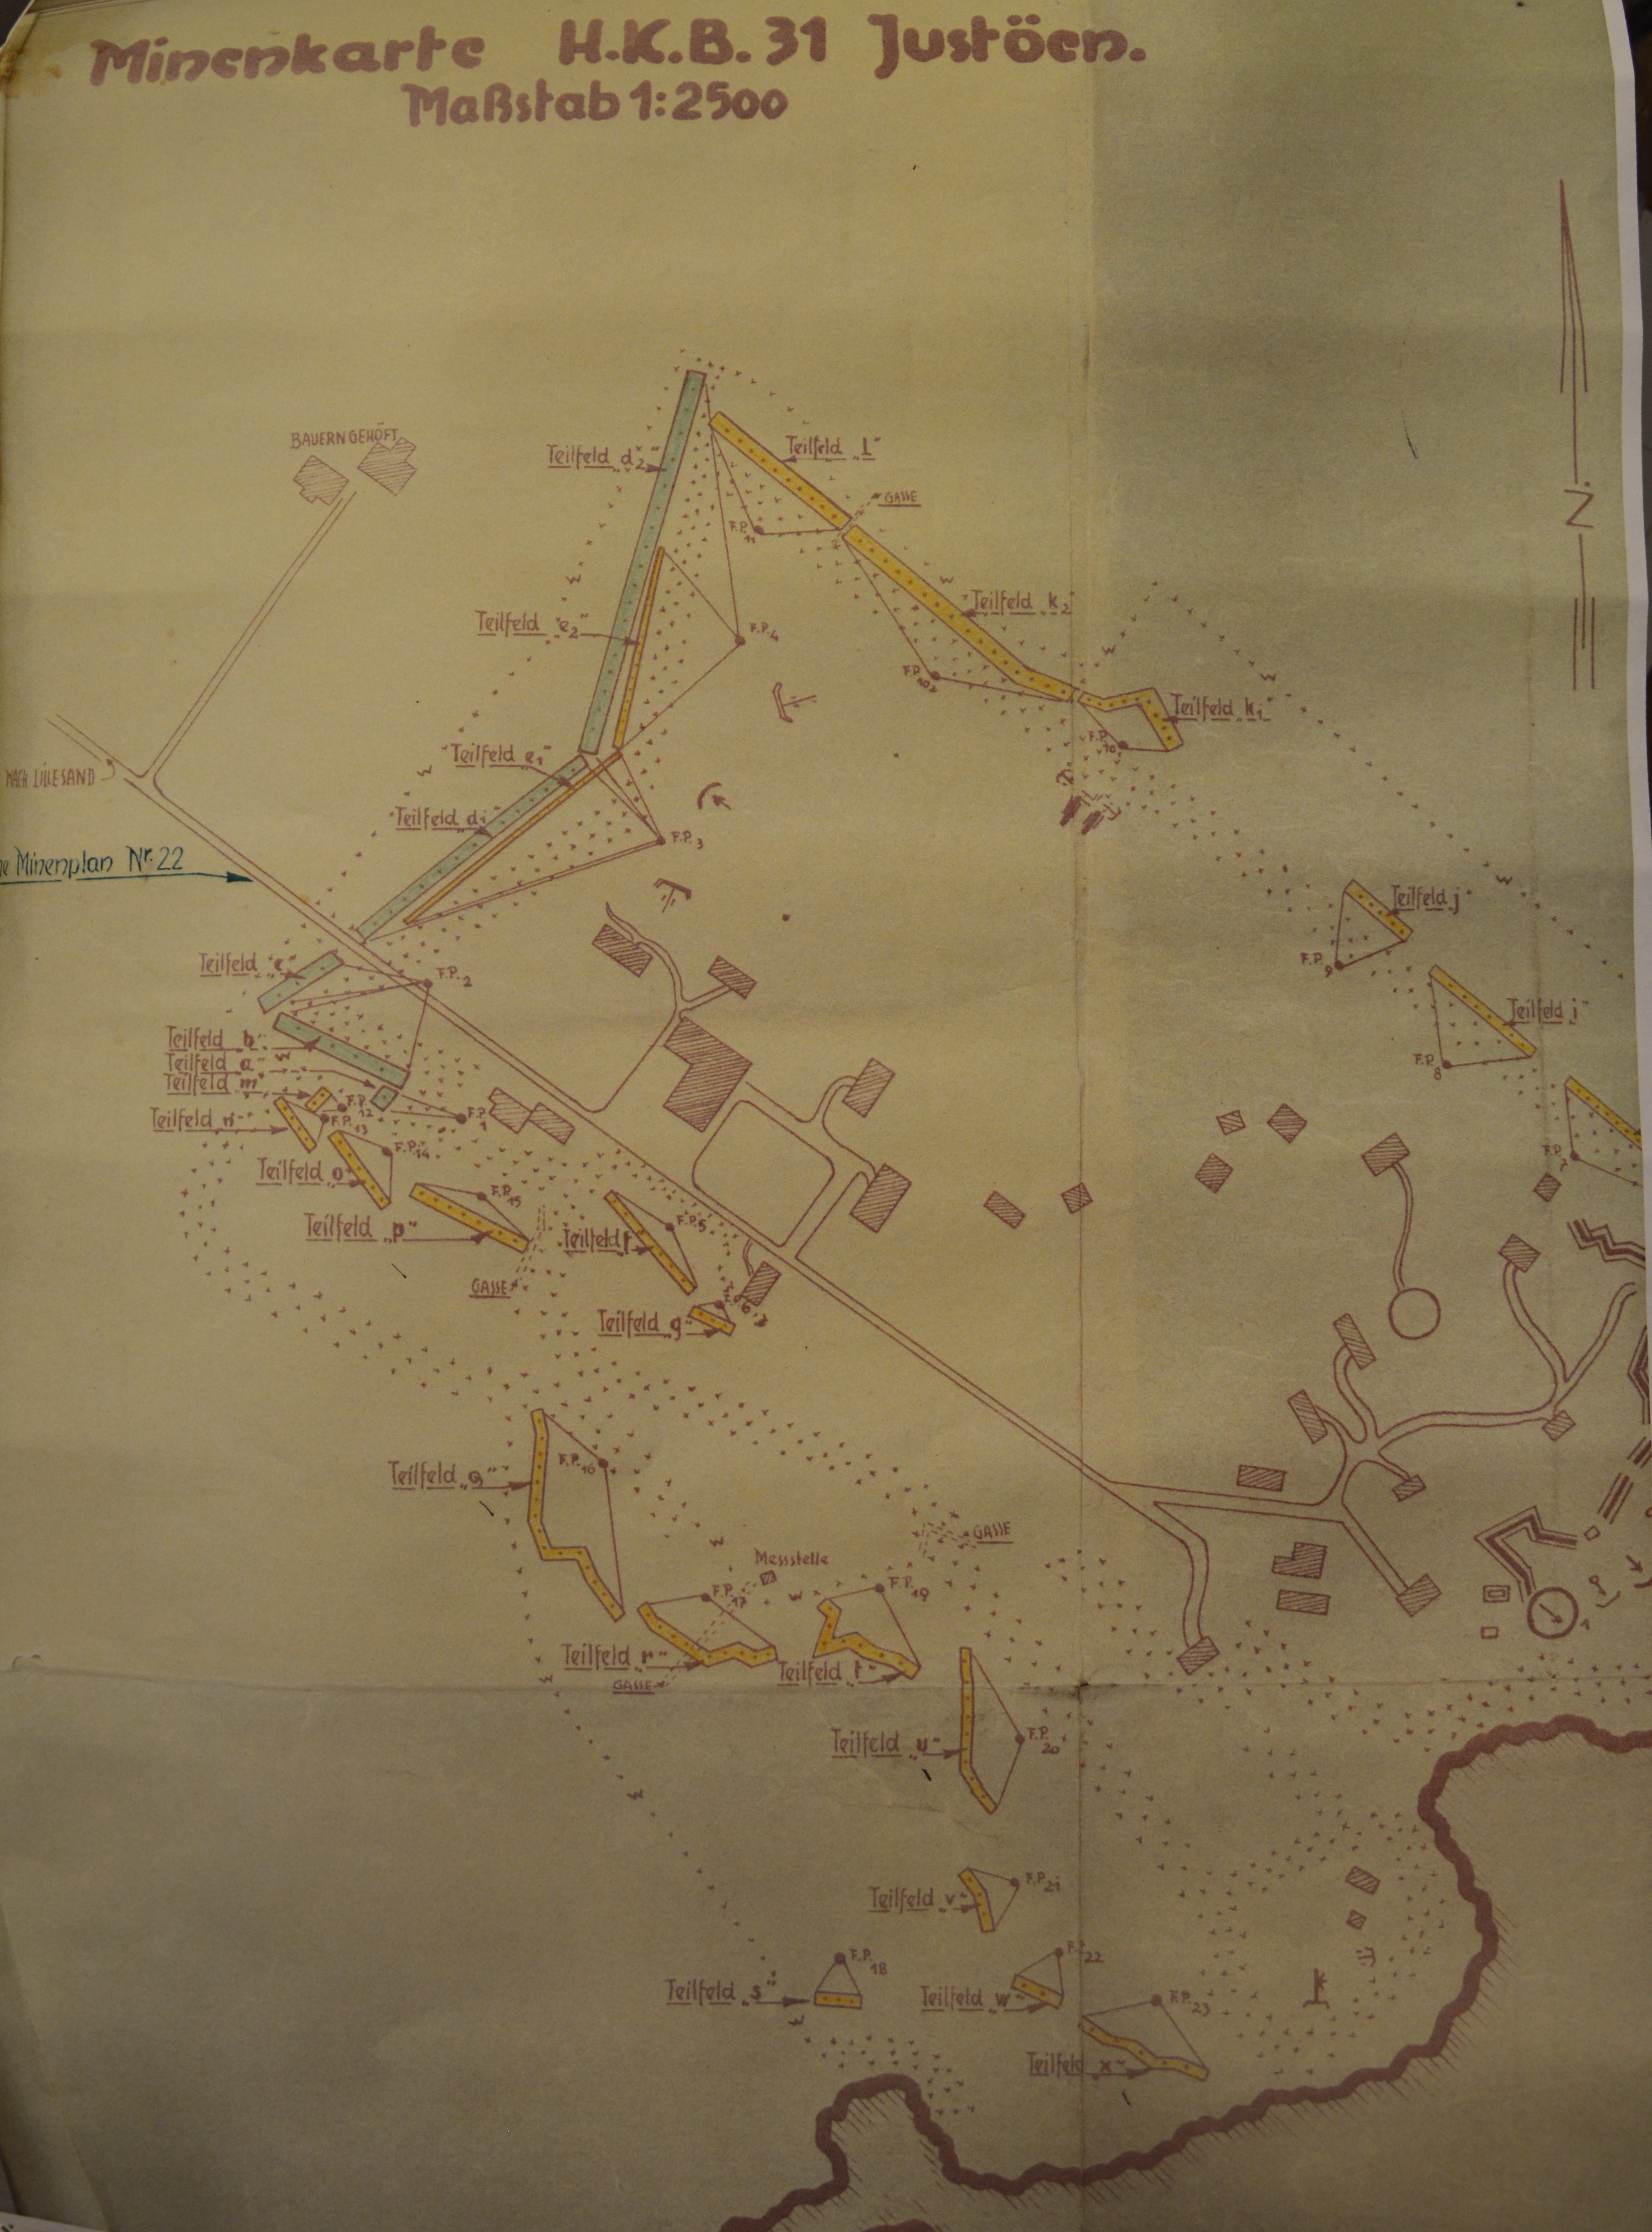 Statsarkivet i Kristiansand, 1401-0010 Distriktskommando Sørlandet, Ta- minekart 1942-1945, Ta- 0002, Tyske minekart for